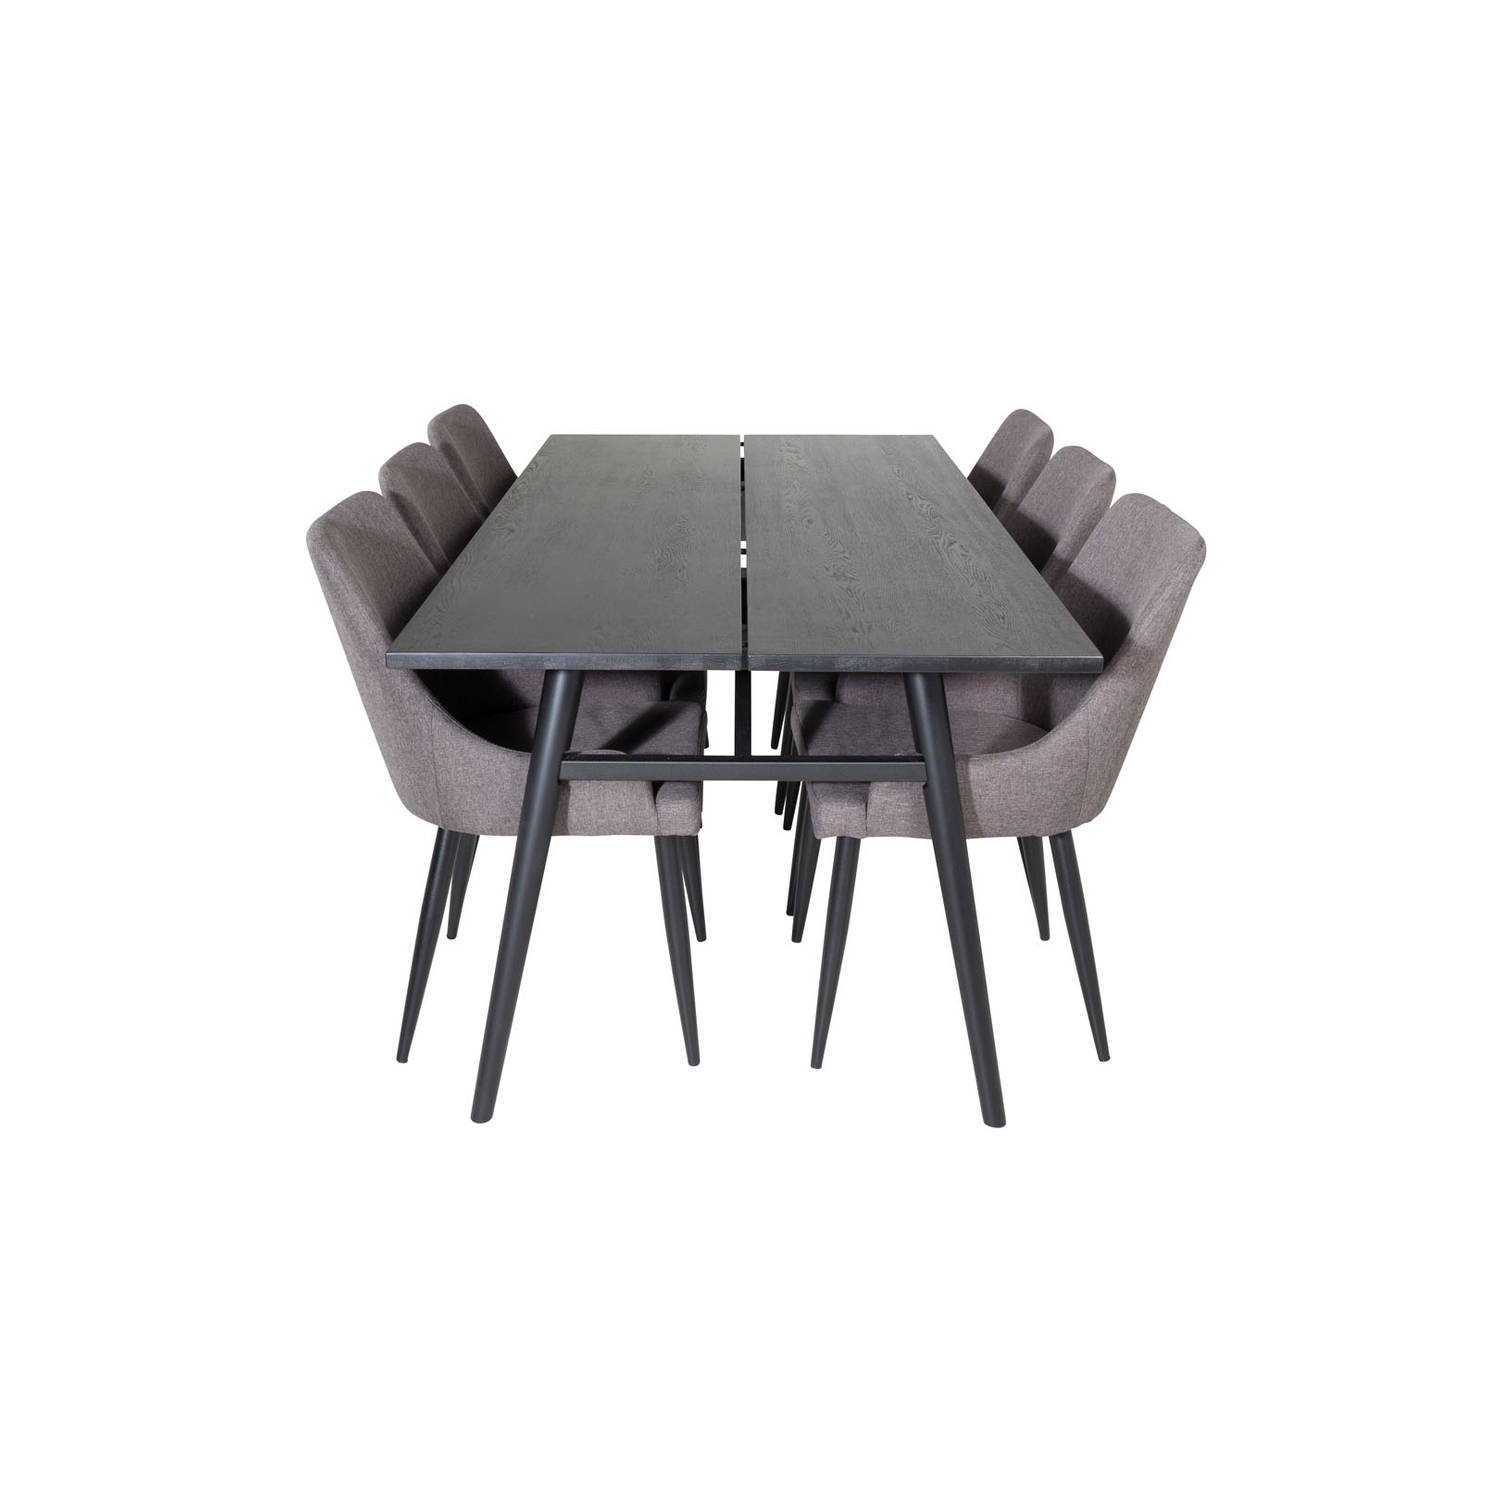 Sleek eethoek eetkamertafel uitschuifbare tafel lengte cm 195 / 280 zwart en 6 Plaza eetkamerstal grijs, zwart.